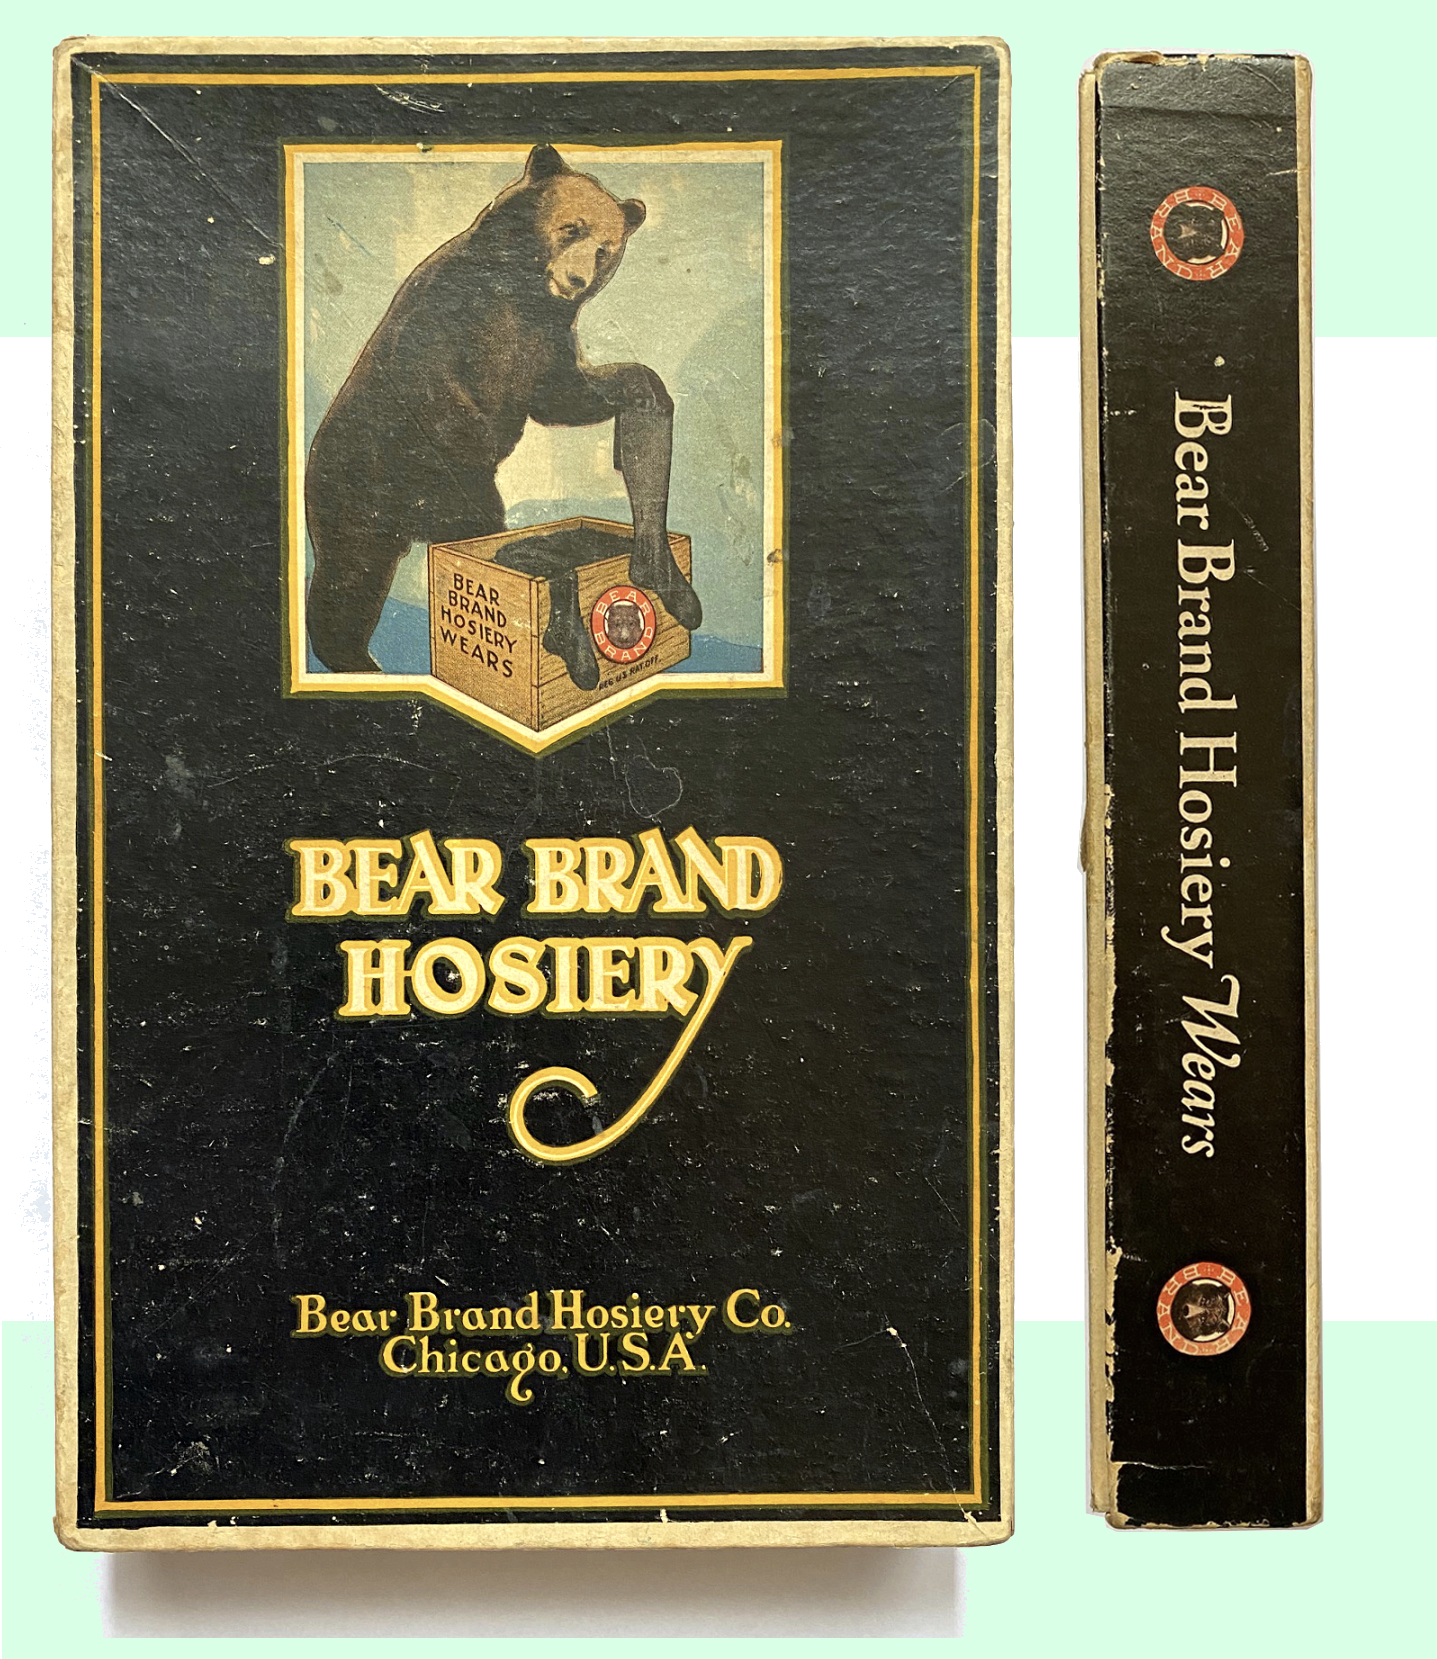 Bear Brand Hosiery Co., est. 1894